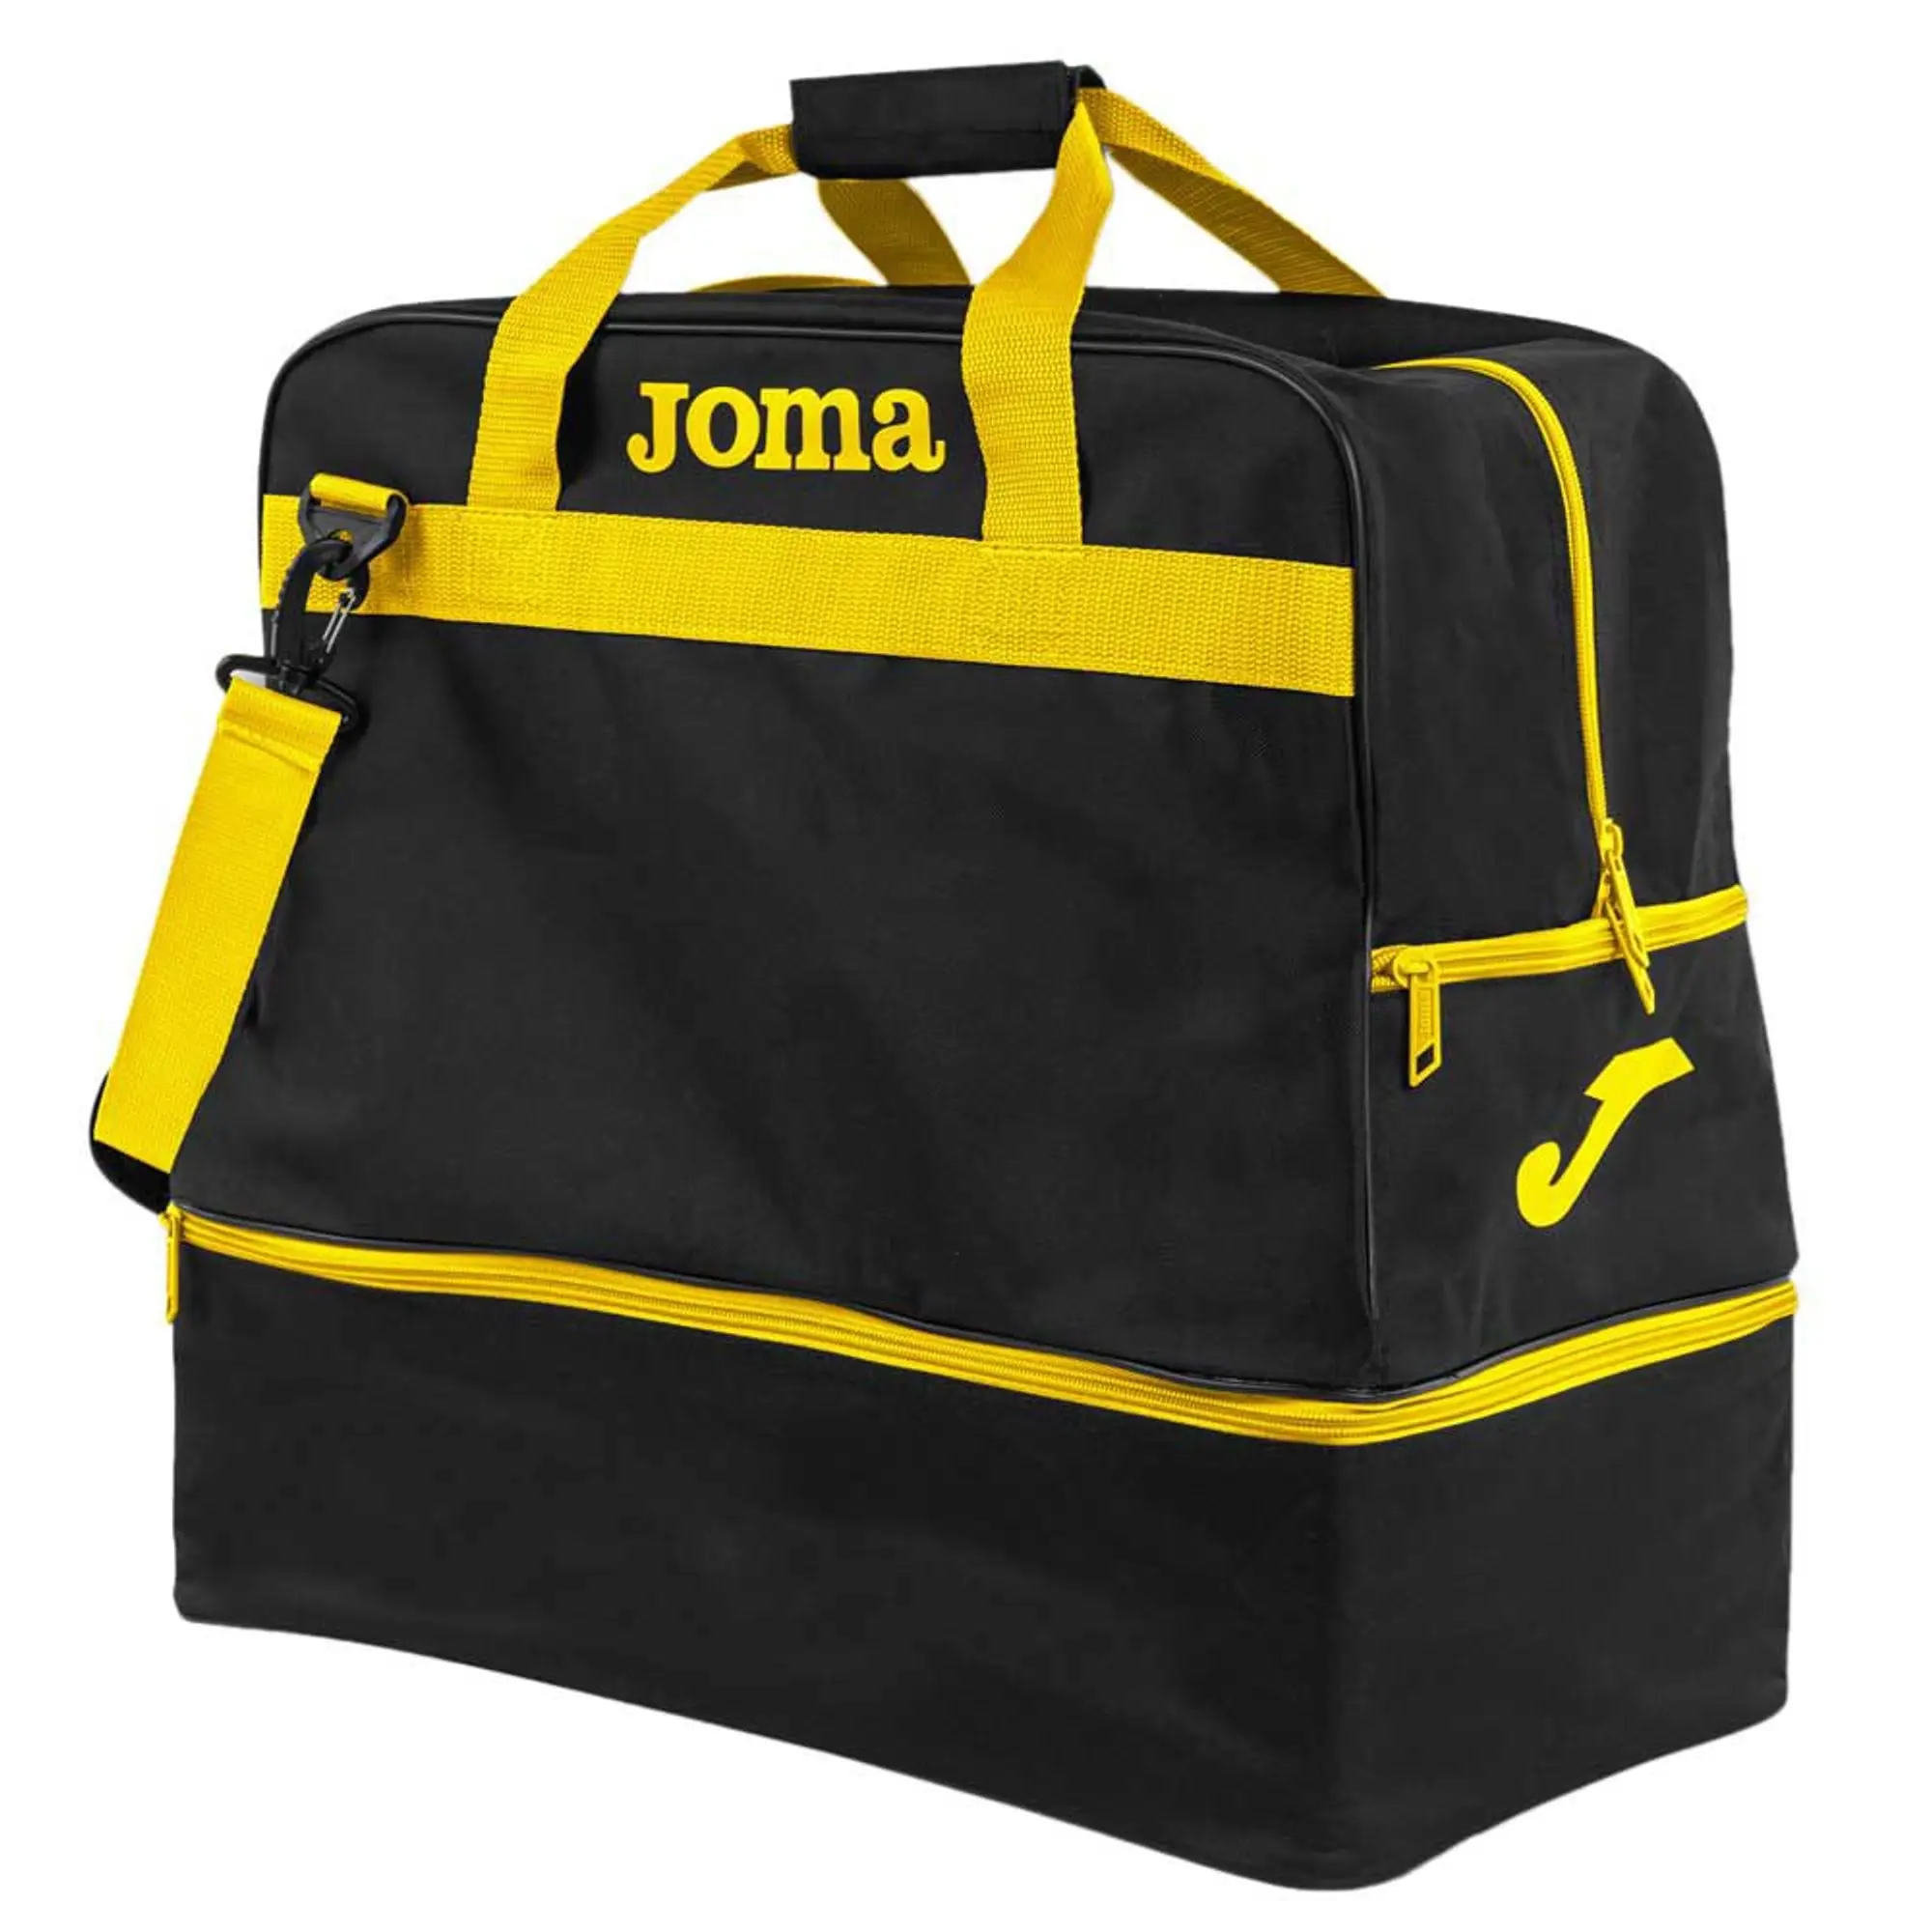 Joma Training Iii 63.2l Bag  - Black